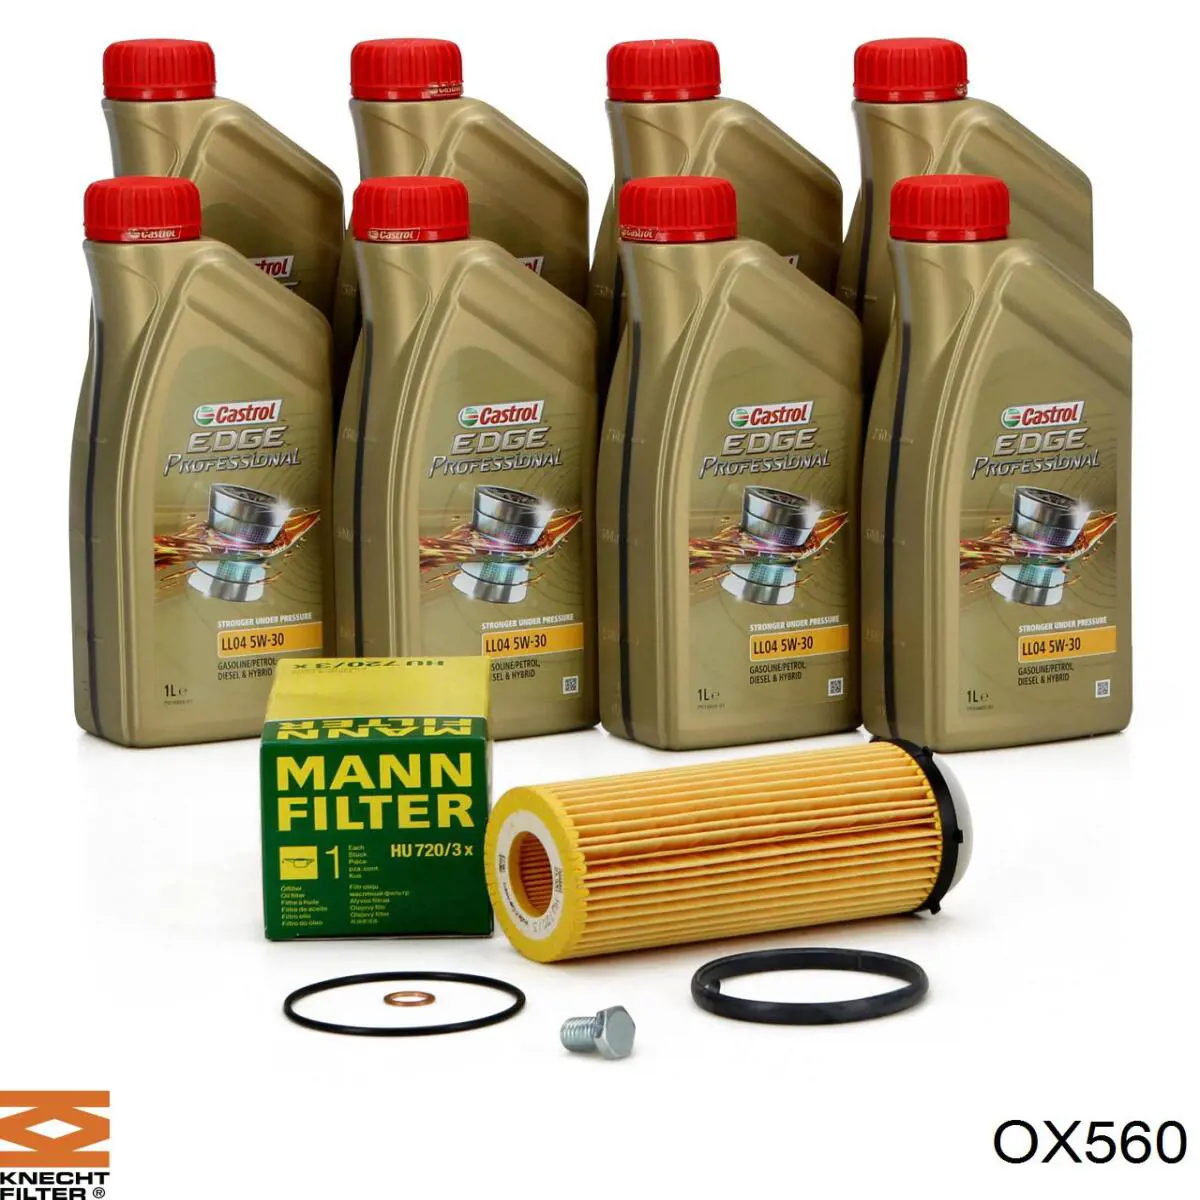 OX560 Knecht-Mahle filtro de aceite